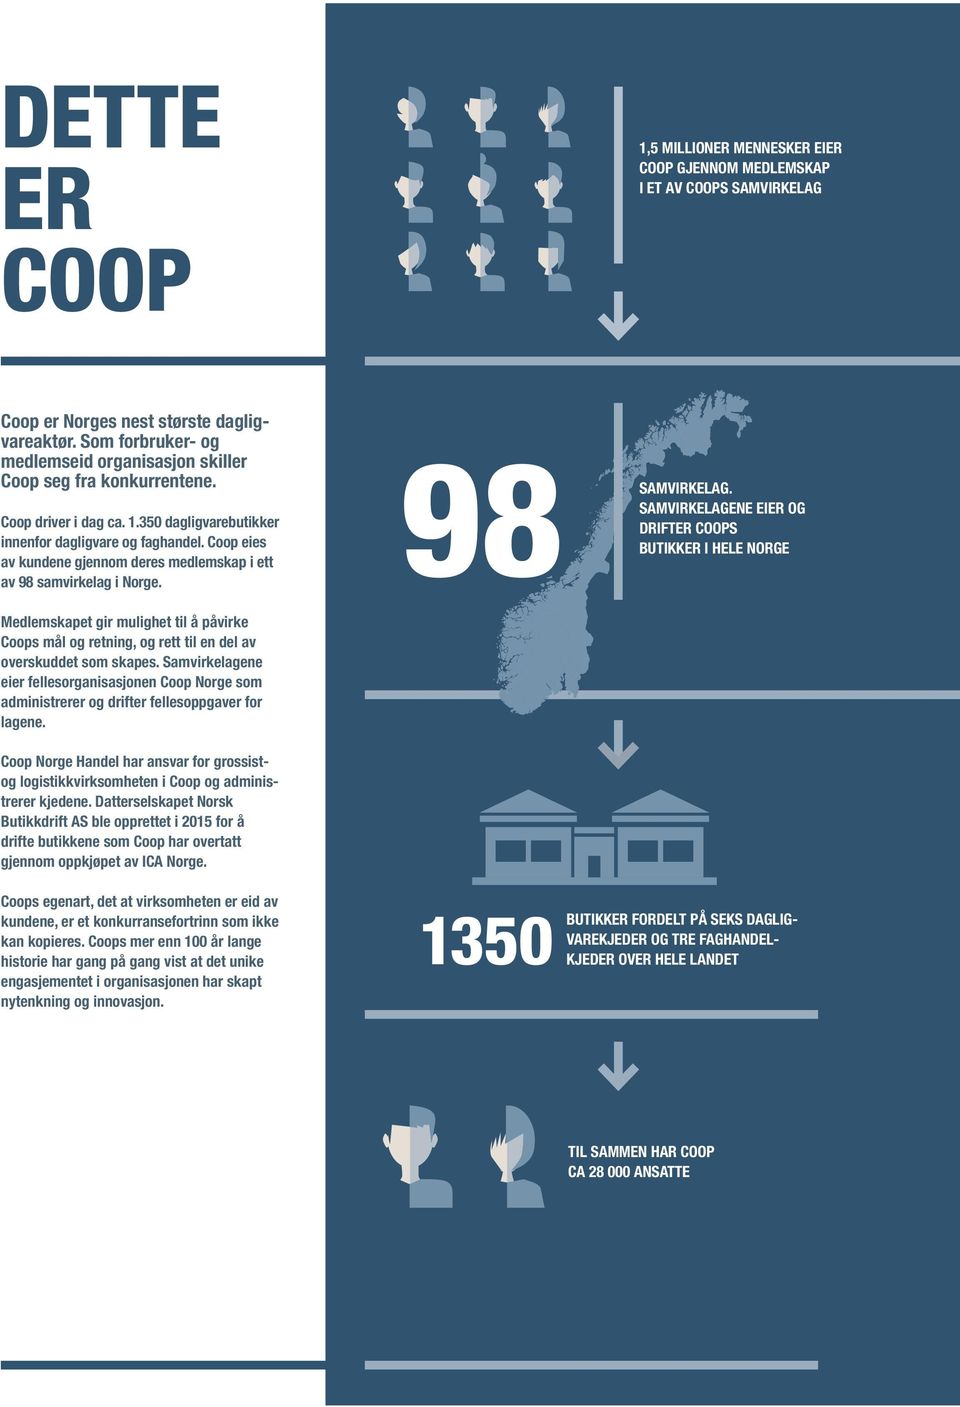 Coop eies av kundene gjennom deres medlemskap i ett av 98 samvirkelag i Norge. Medlemskapet gir mulighet til å påvirke Coops mål og retning, og rett til en del av overskuddet som skapes.